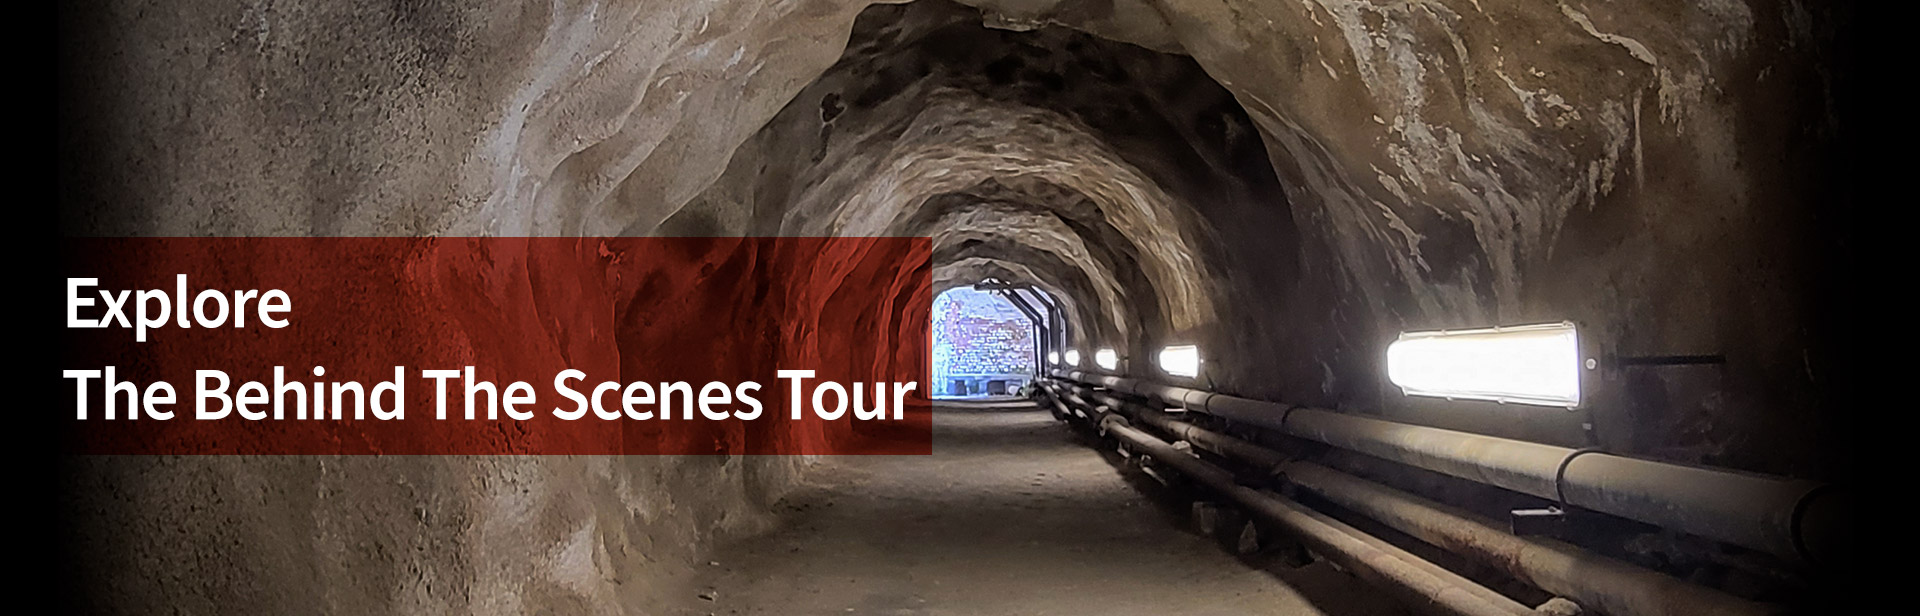 アルカトラズ島の地下にあるトンネルの画像と、画像の上に「Explorer the behind the scenes tour」と書かれたテキストが表示されています。